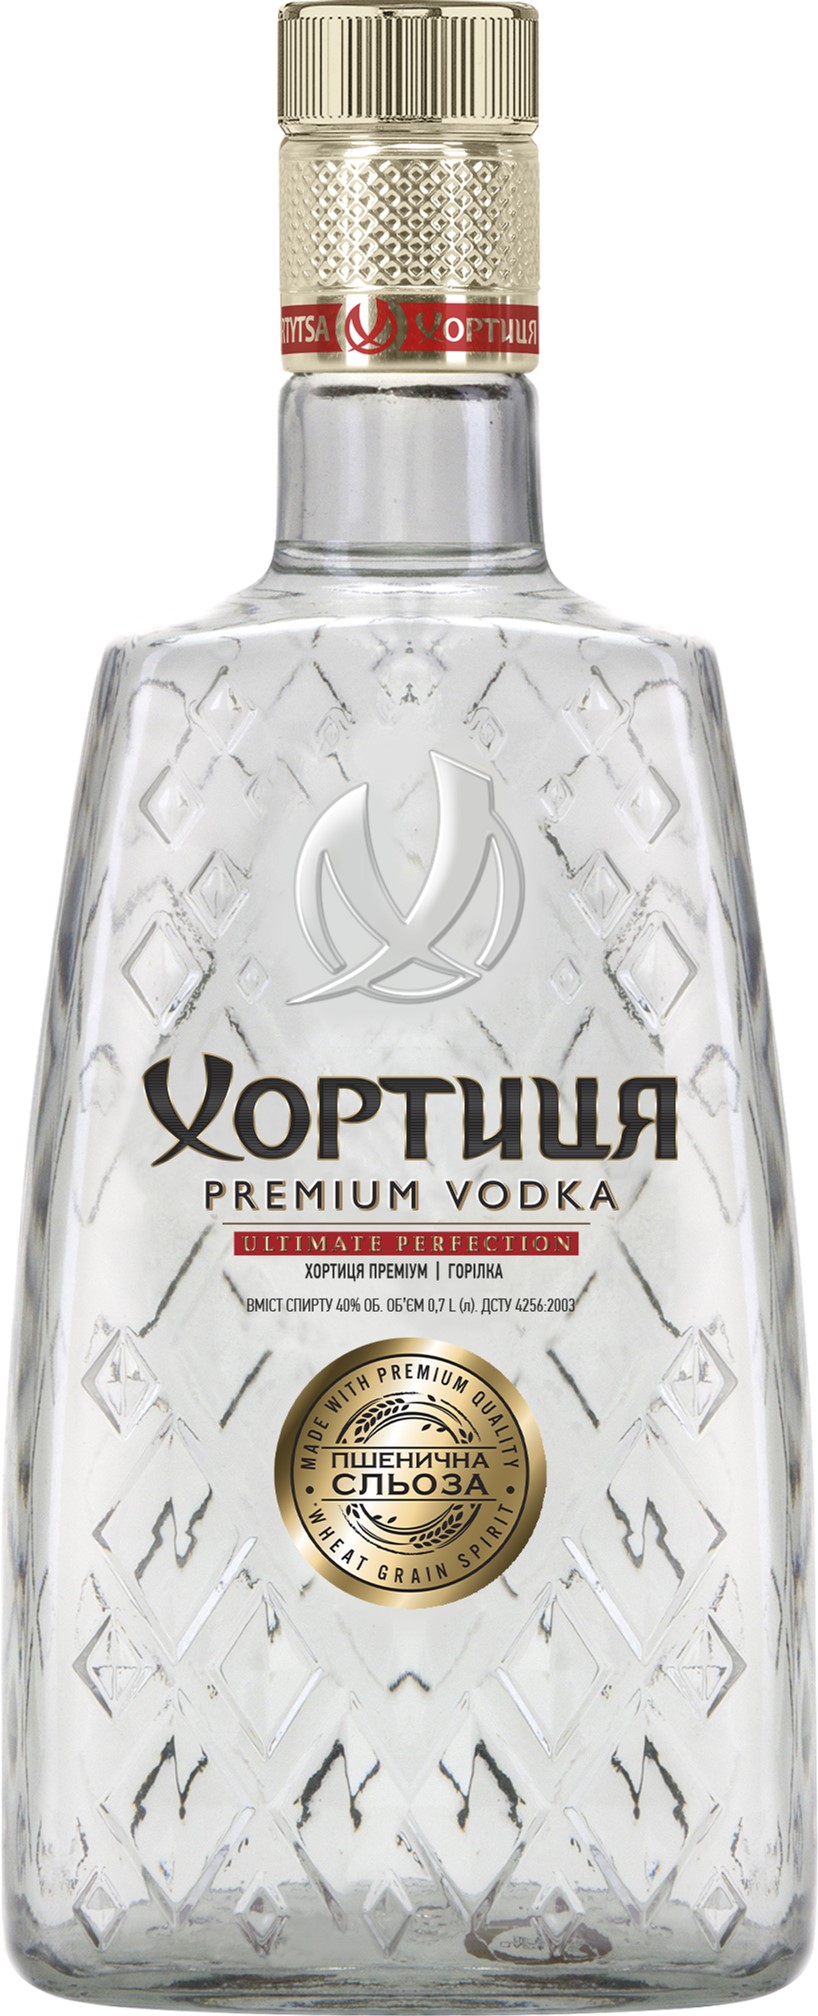 Как миллиардеры Украины продают в России водку, чтобы финансировать ВСУ